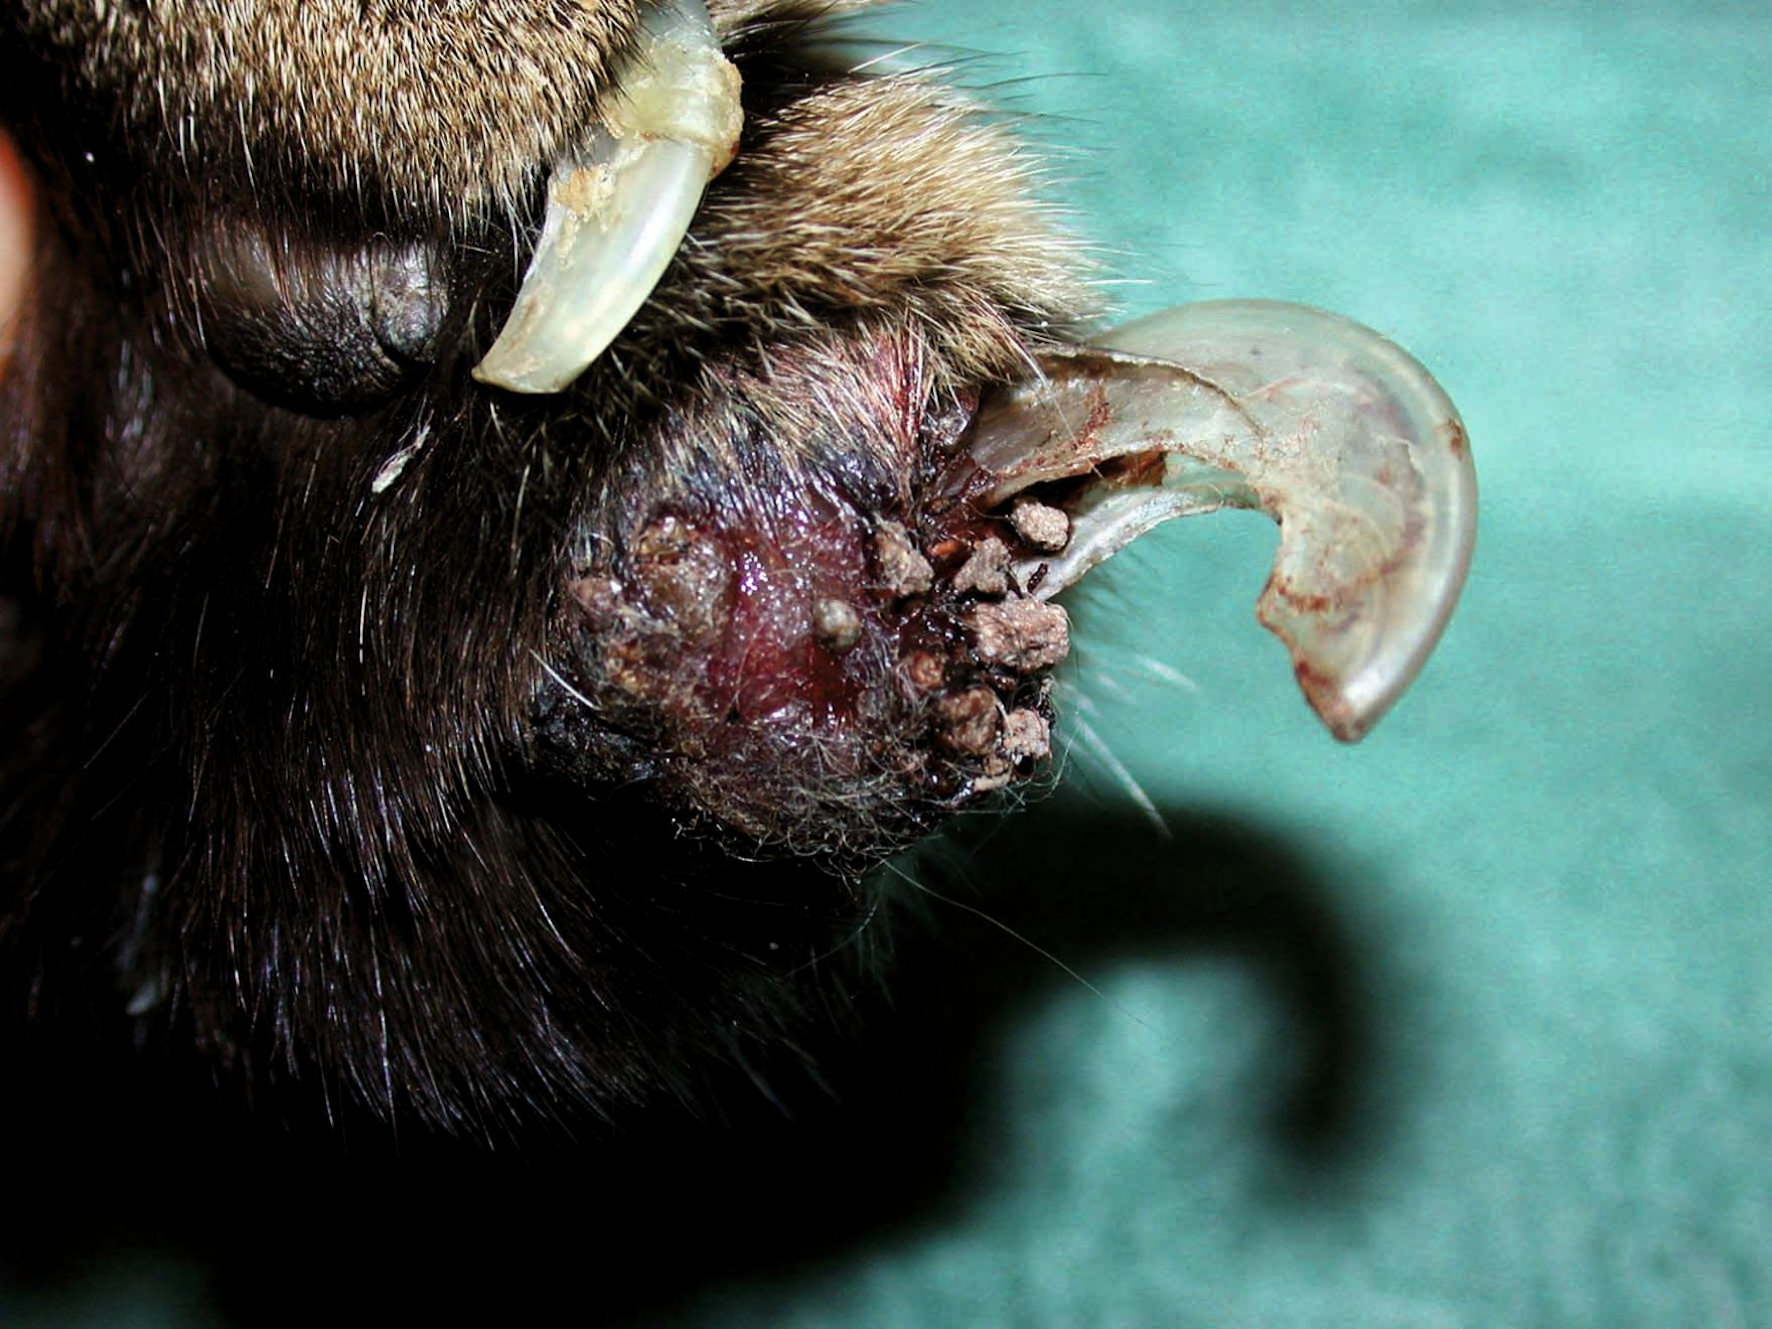 고양이 폐-발가락 증후군(FLDS)이 있는 고양이의 발톱. 발톱 주위염(paronychia), 출혈, 발톱의 고정된 외피(fixed exsheathment)가 보인다.